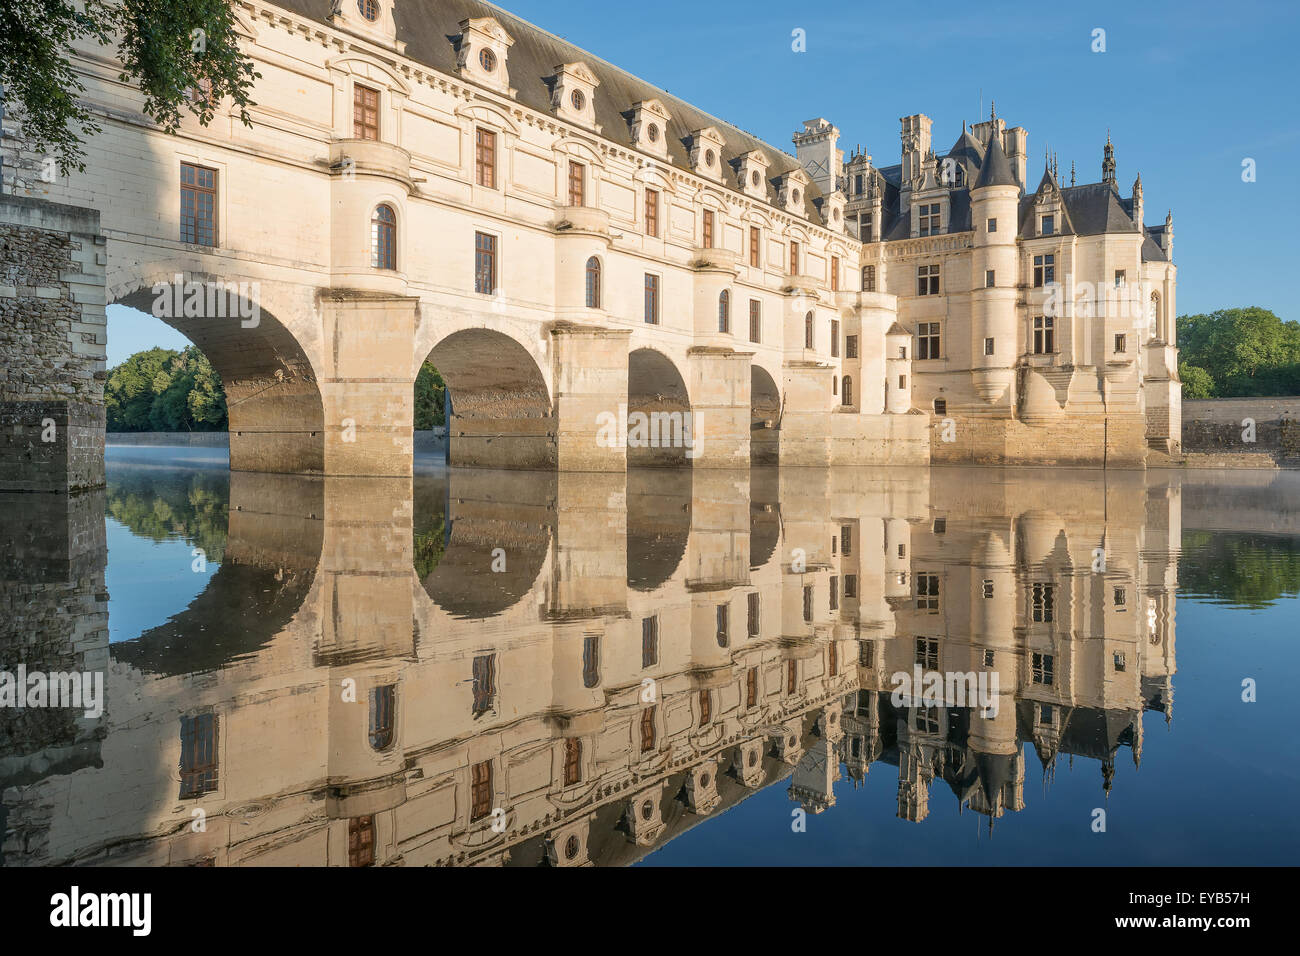 Château de Chenonceau, construit sur le Cher , val de Loire,France,à l'aube. Banque D'Images